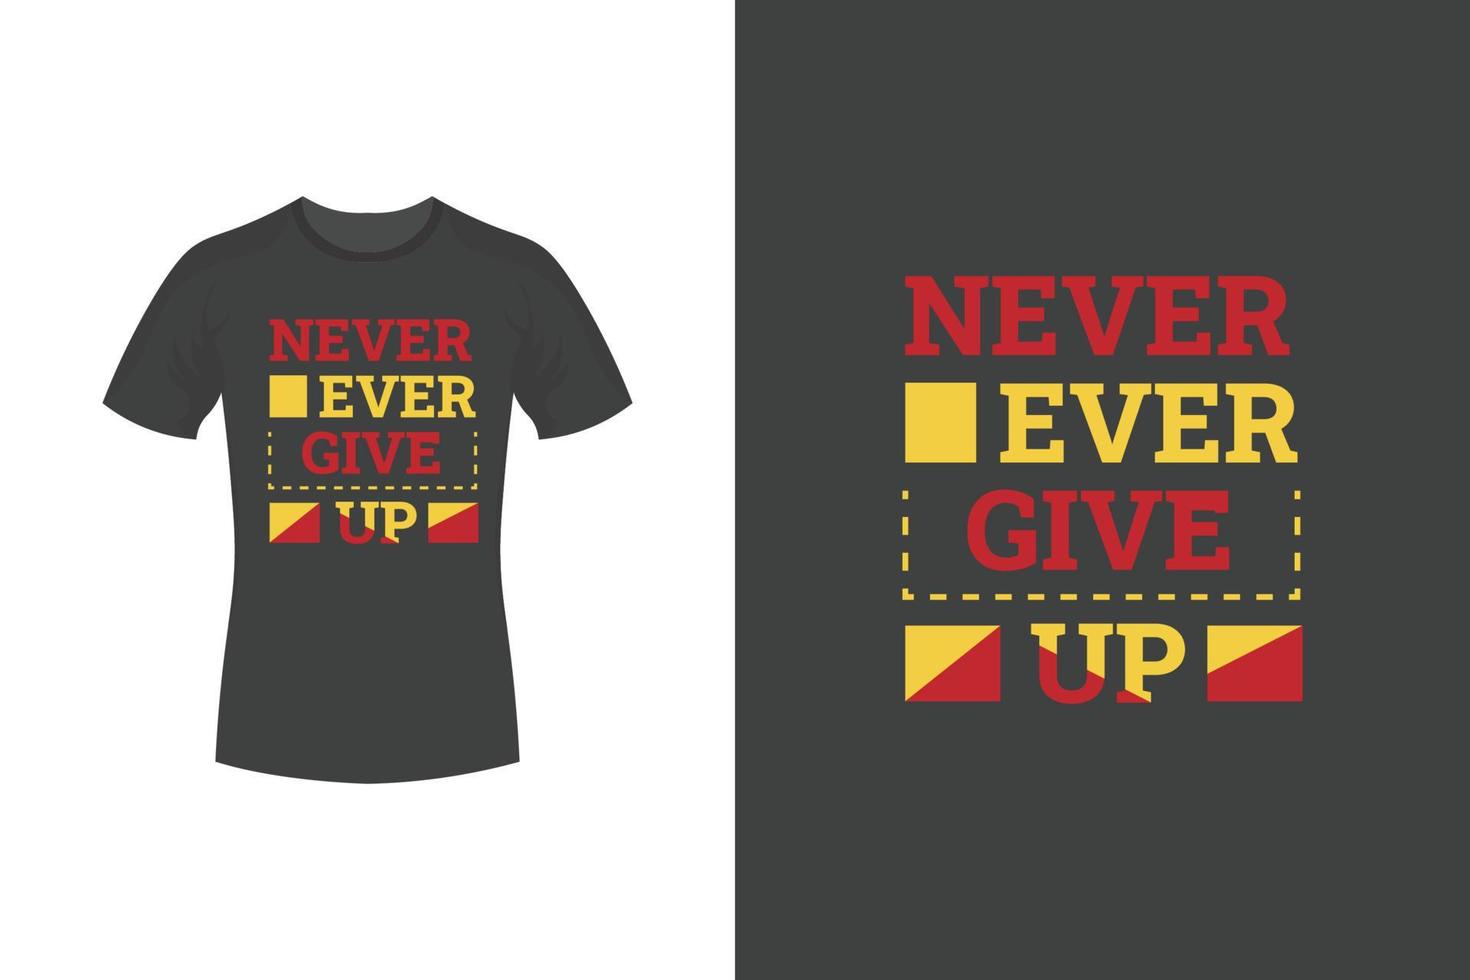 ge aldrig upp motiverande citat och typografi t-shirtdesign vektor